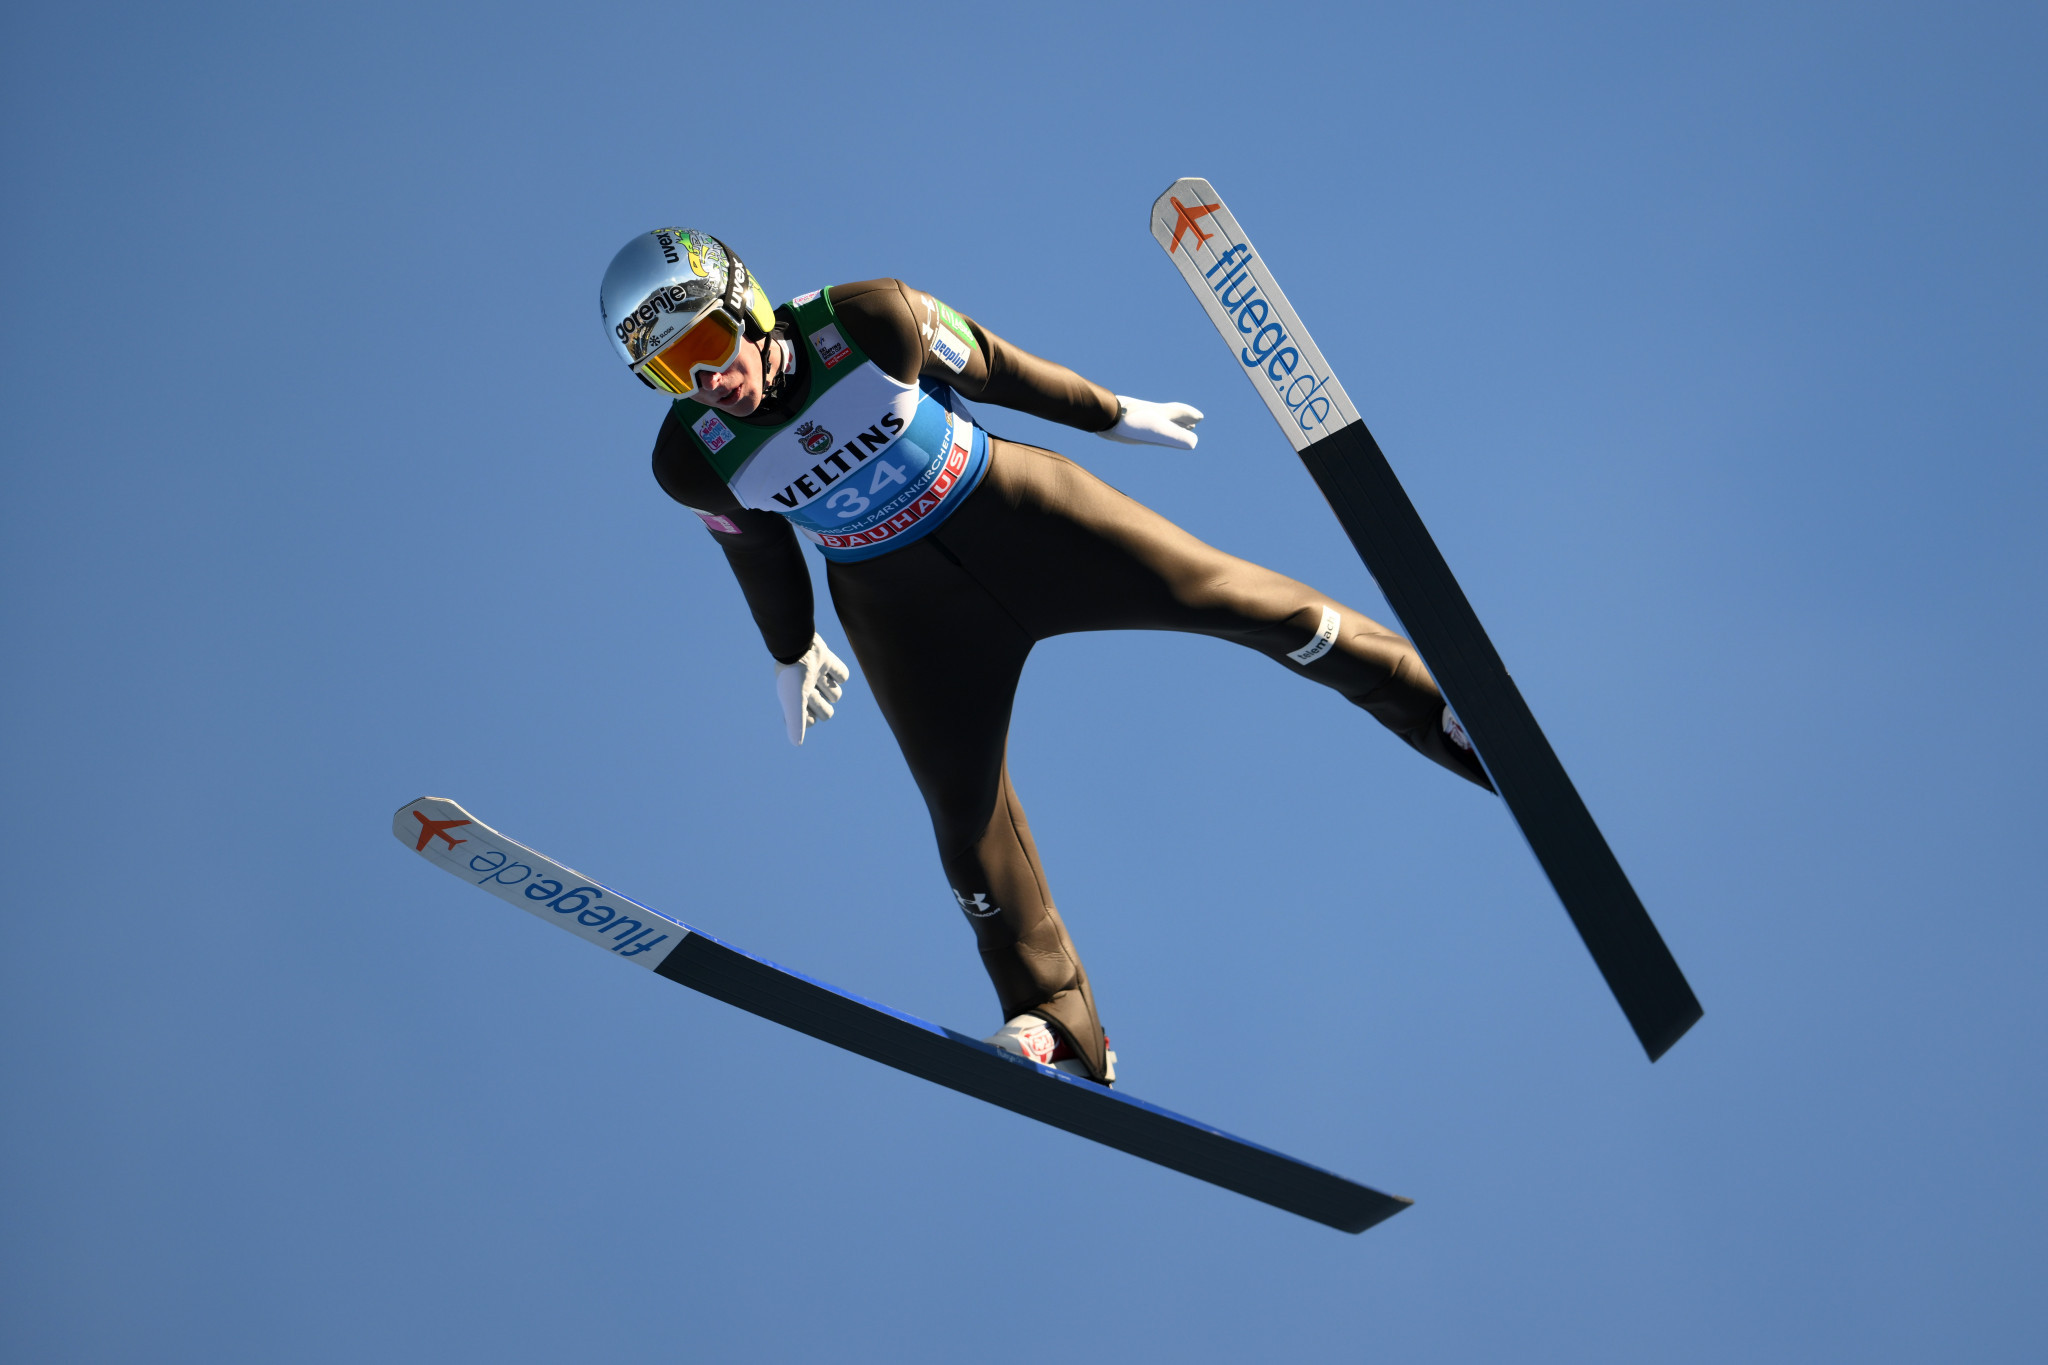 Zajc beats Kraft to take gold at FIS Ski Jumping World Cup in Oberstdorf